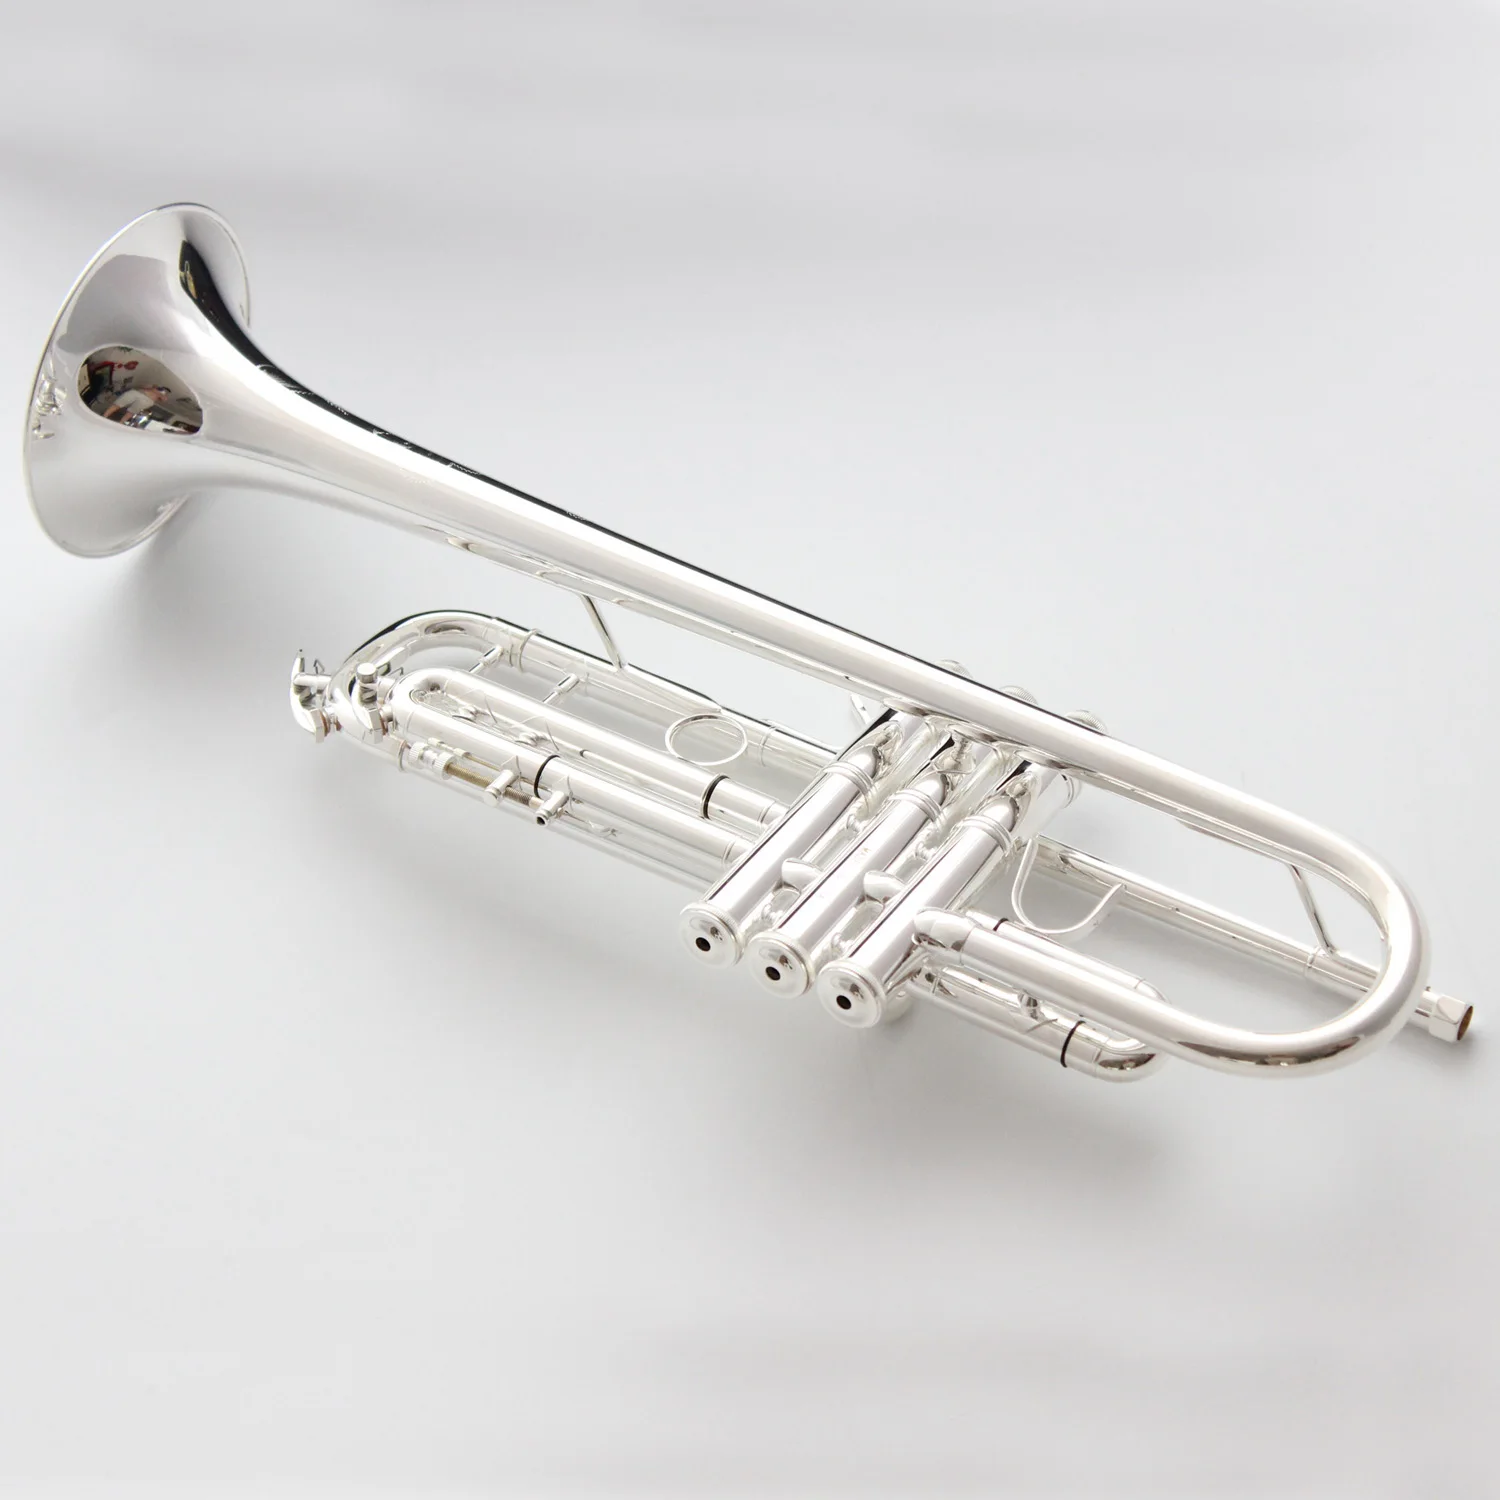 Музыка Fancier клуб Профессиональный Bb Труба LT197GS-96 посеребренный музыкальный инструмент труба LT197GS96 с Чехол мундштук